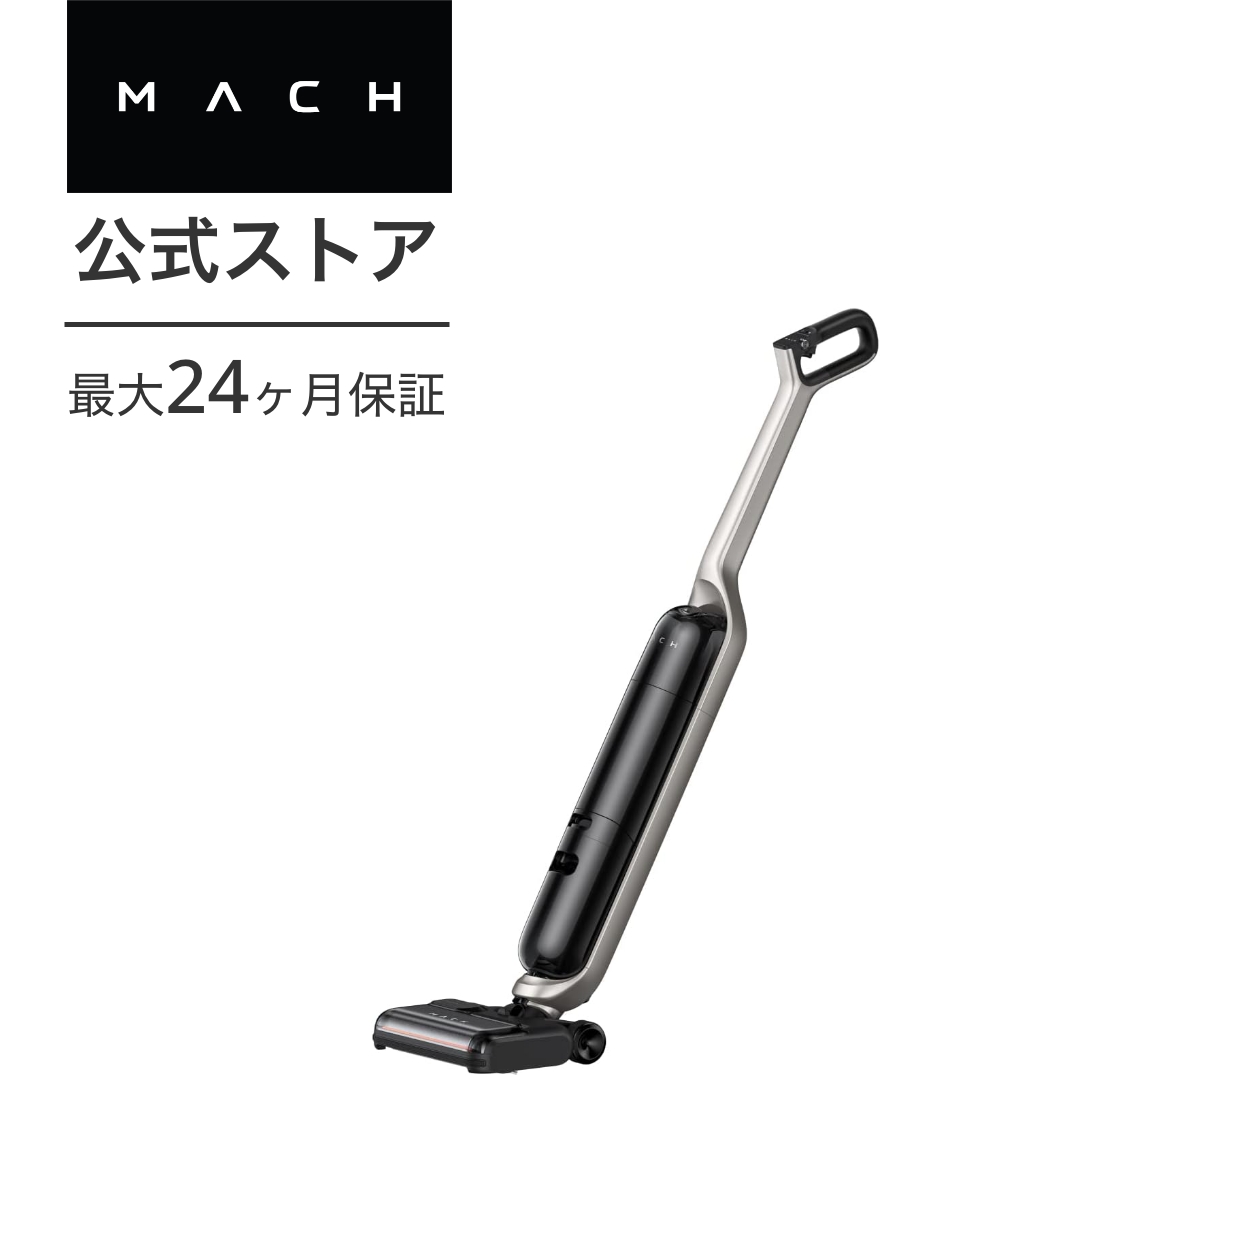 Anker MACH (マッハ) V1 Ultra (コードレス水拭き掃除機)  高温スチーム/水拭き両用/強力吸引/急速床乾燥/ブラシ自動洗浄・自動乾燥/長時間運転/大容量タンク